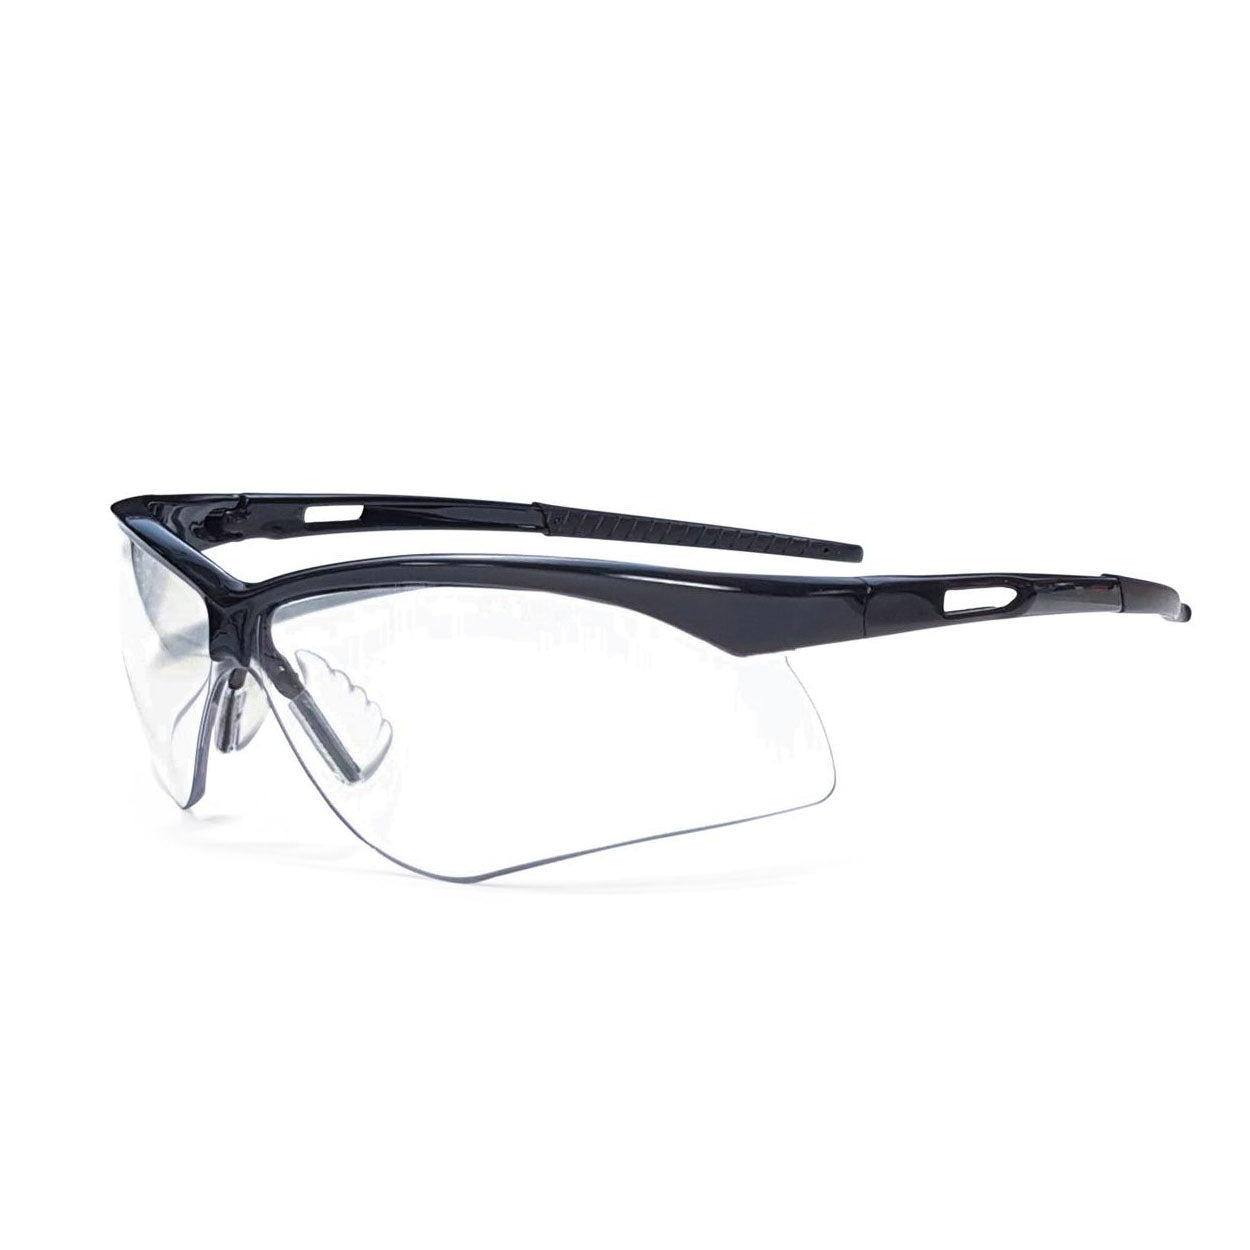 Radnor® Premier Series Black Safety Glasses Dozen Lee Supply Inc